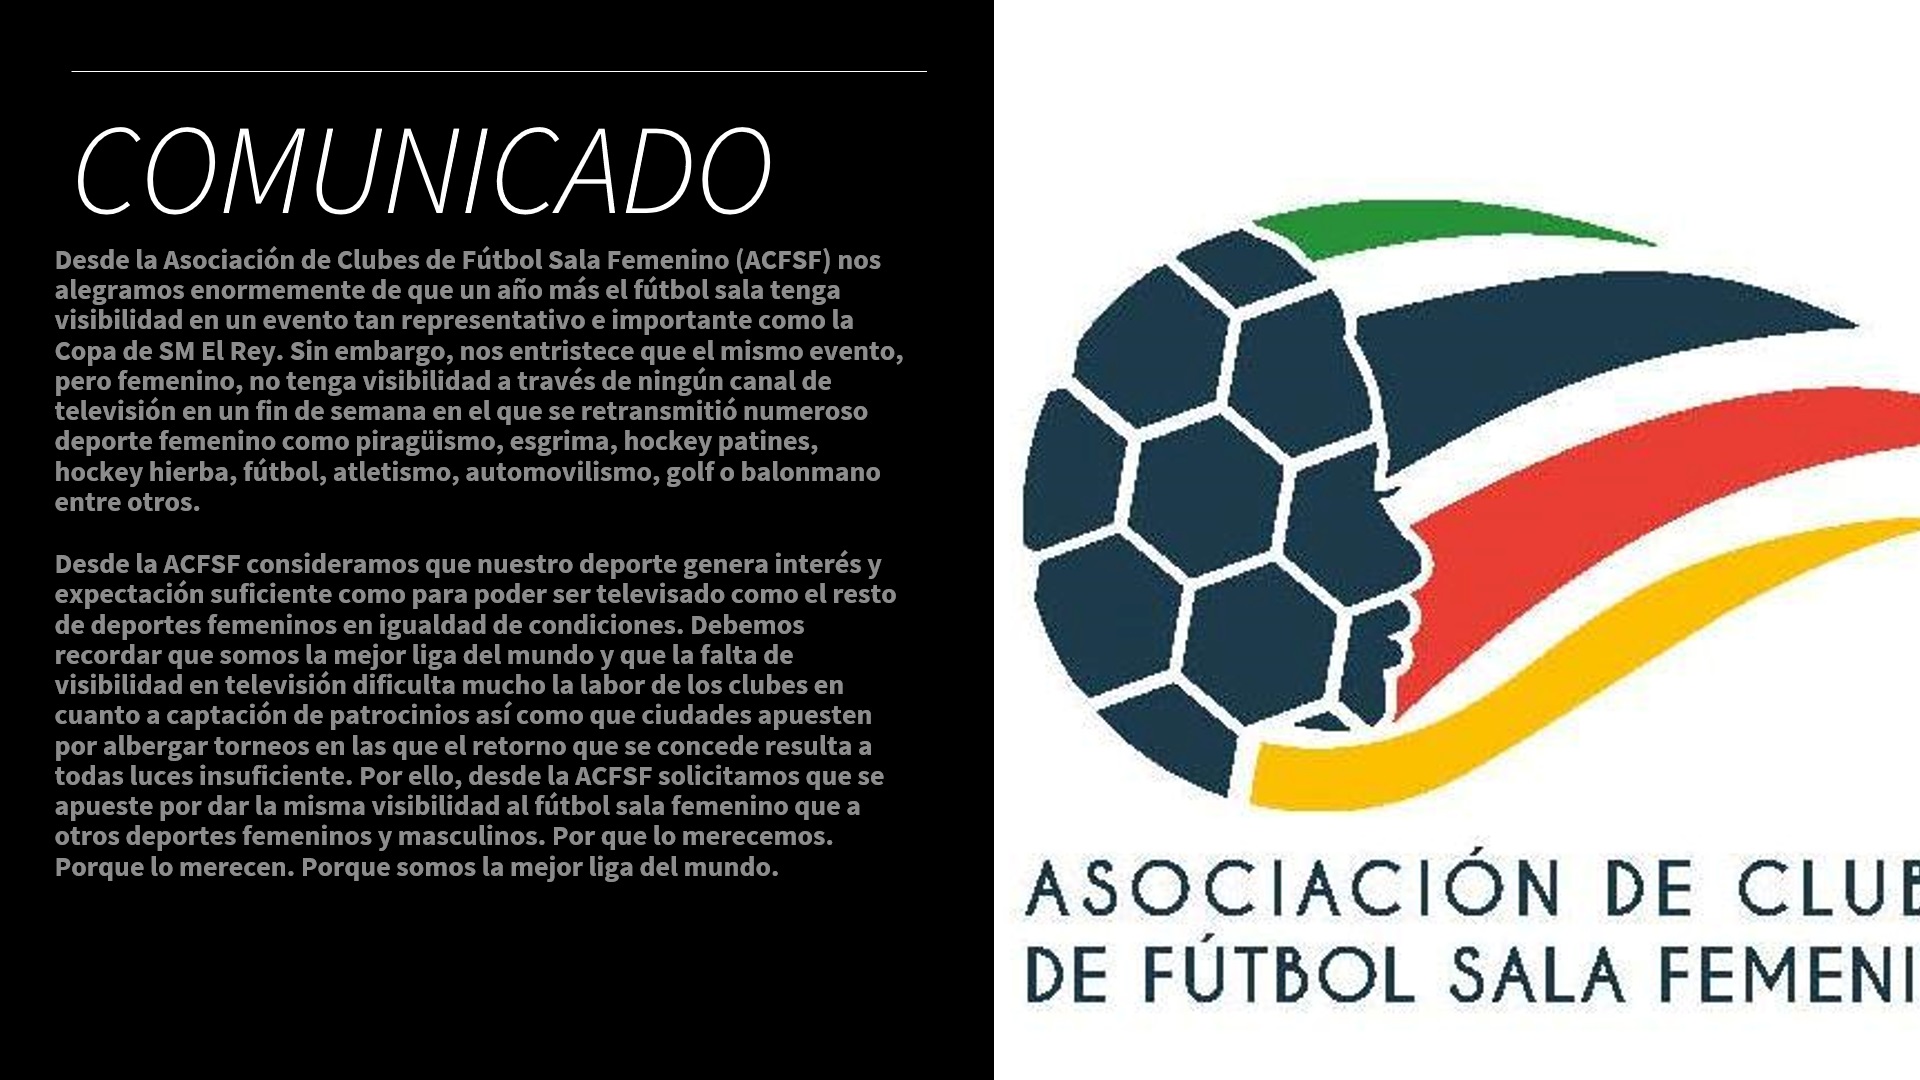 La Asociación de Clubs de Fútbol Sala Femenino (ACFSF) solicita que se apueste por dar la misma visibilidad al fútbol sala femenino que a otros deportes femeninos y masculinos